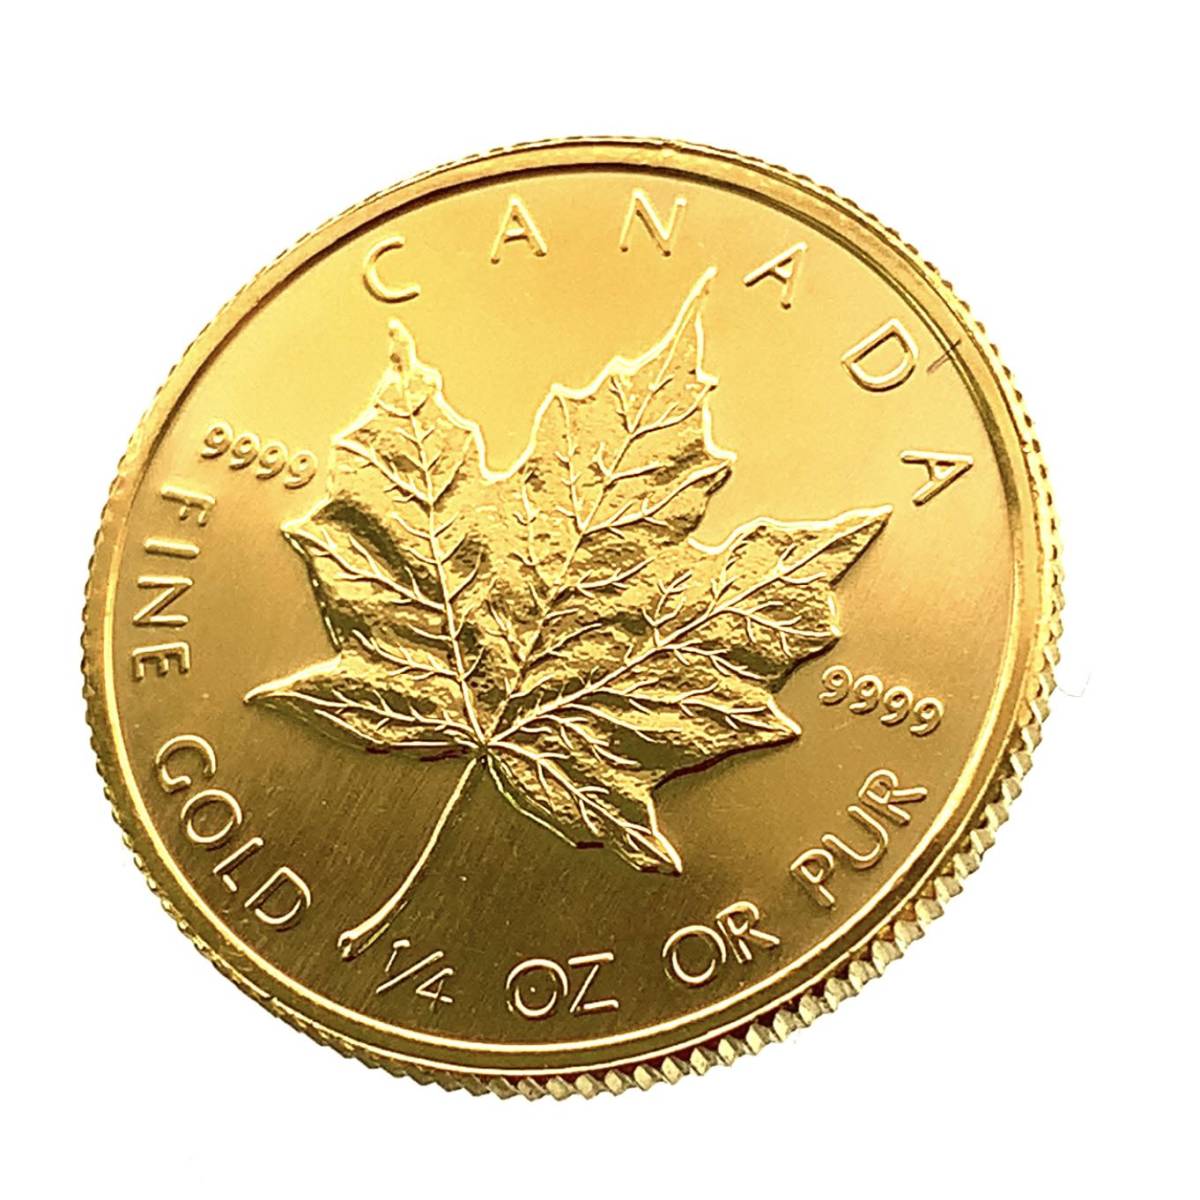 メイプルリーフ 1987年 7.7g 1/4オンス メイプル金貨 エリザベス女王 純金 24金 カナダ王室造幣局 イエローゴールド コイン